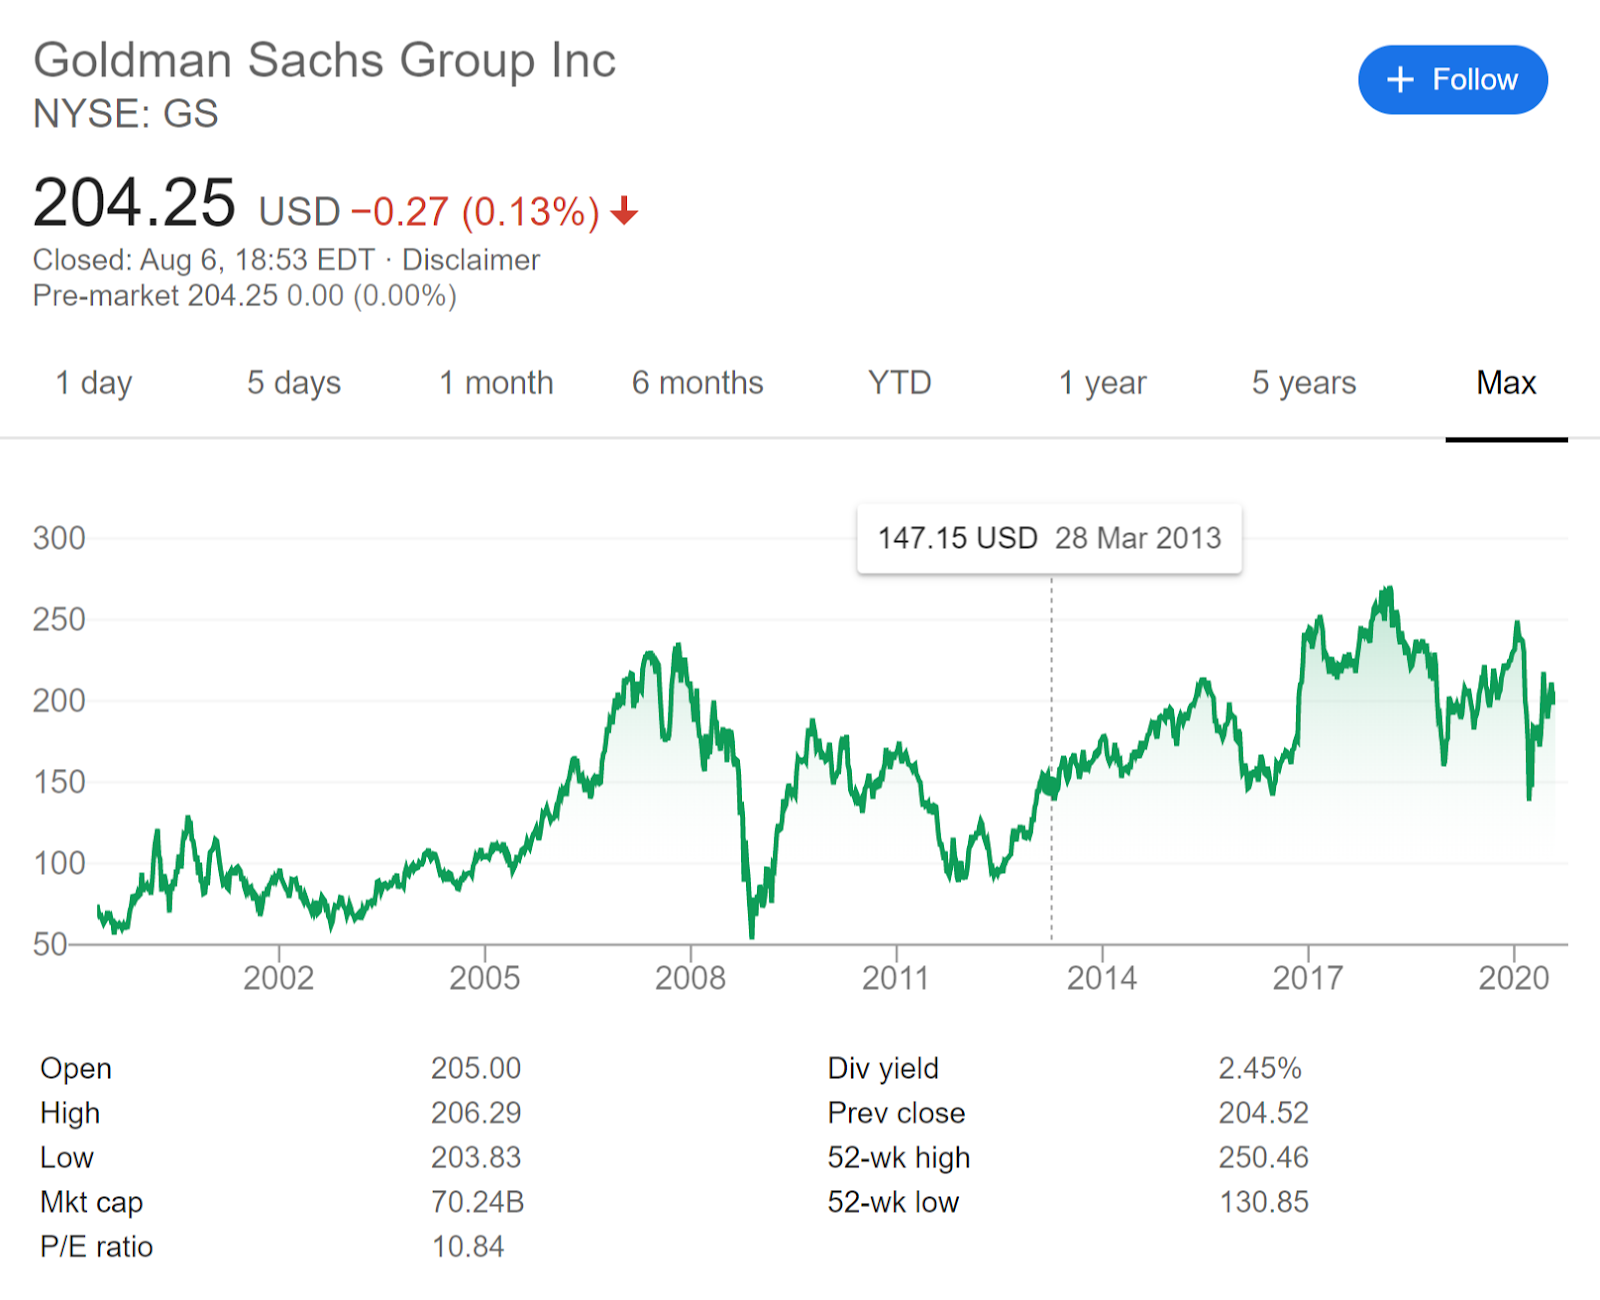 رسم بياني يوضح سعر السهم طويل الأجل لشركة Goldman Sachs Group Inc. المصدر: Google